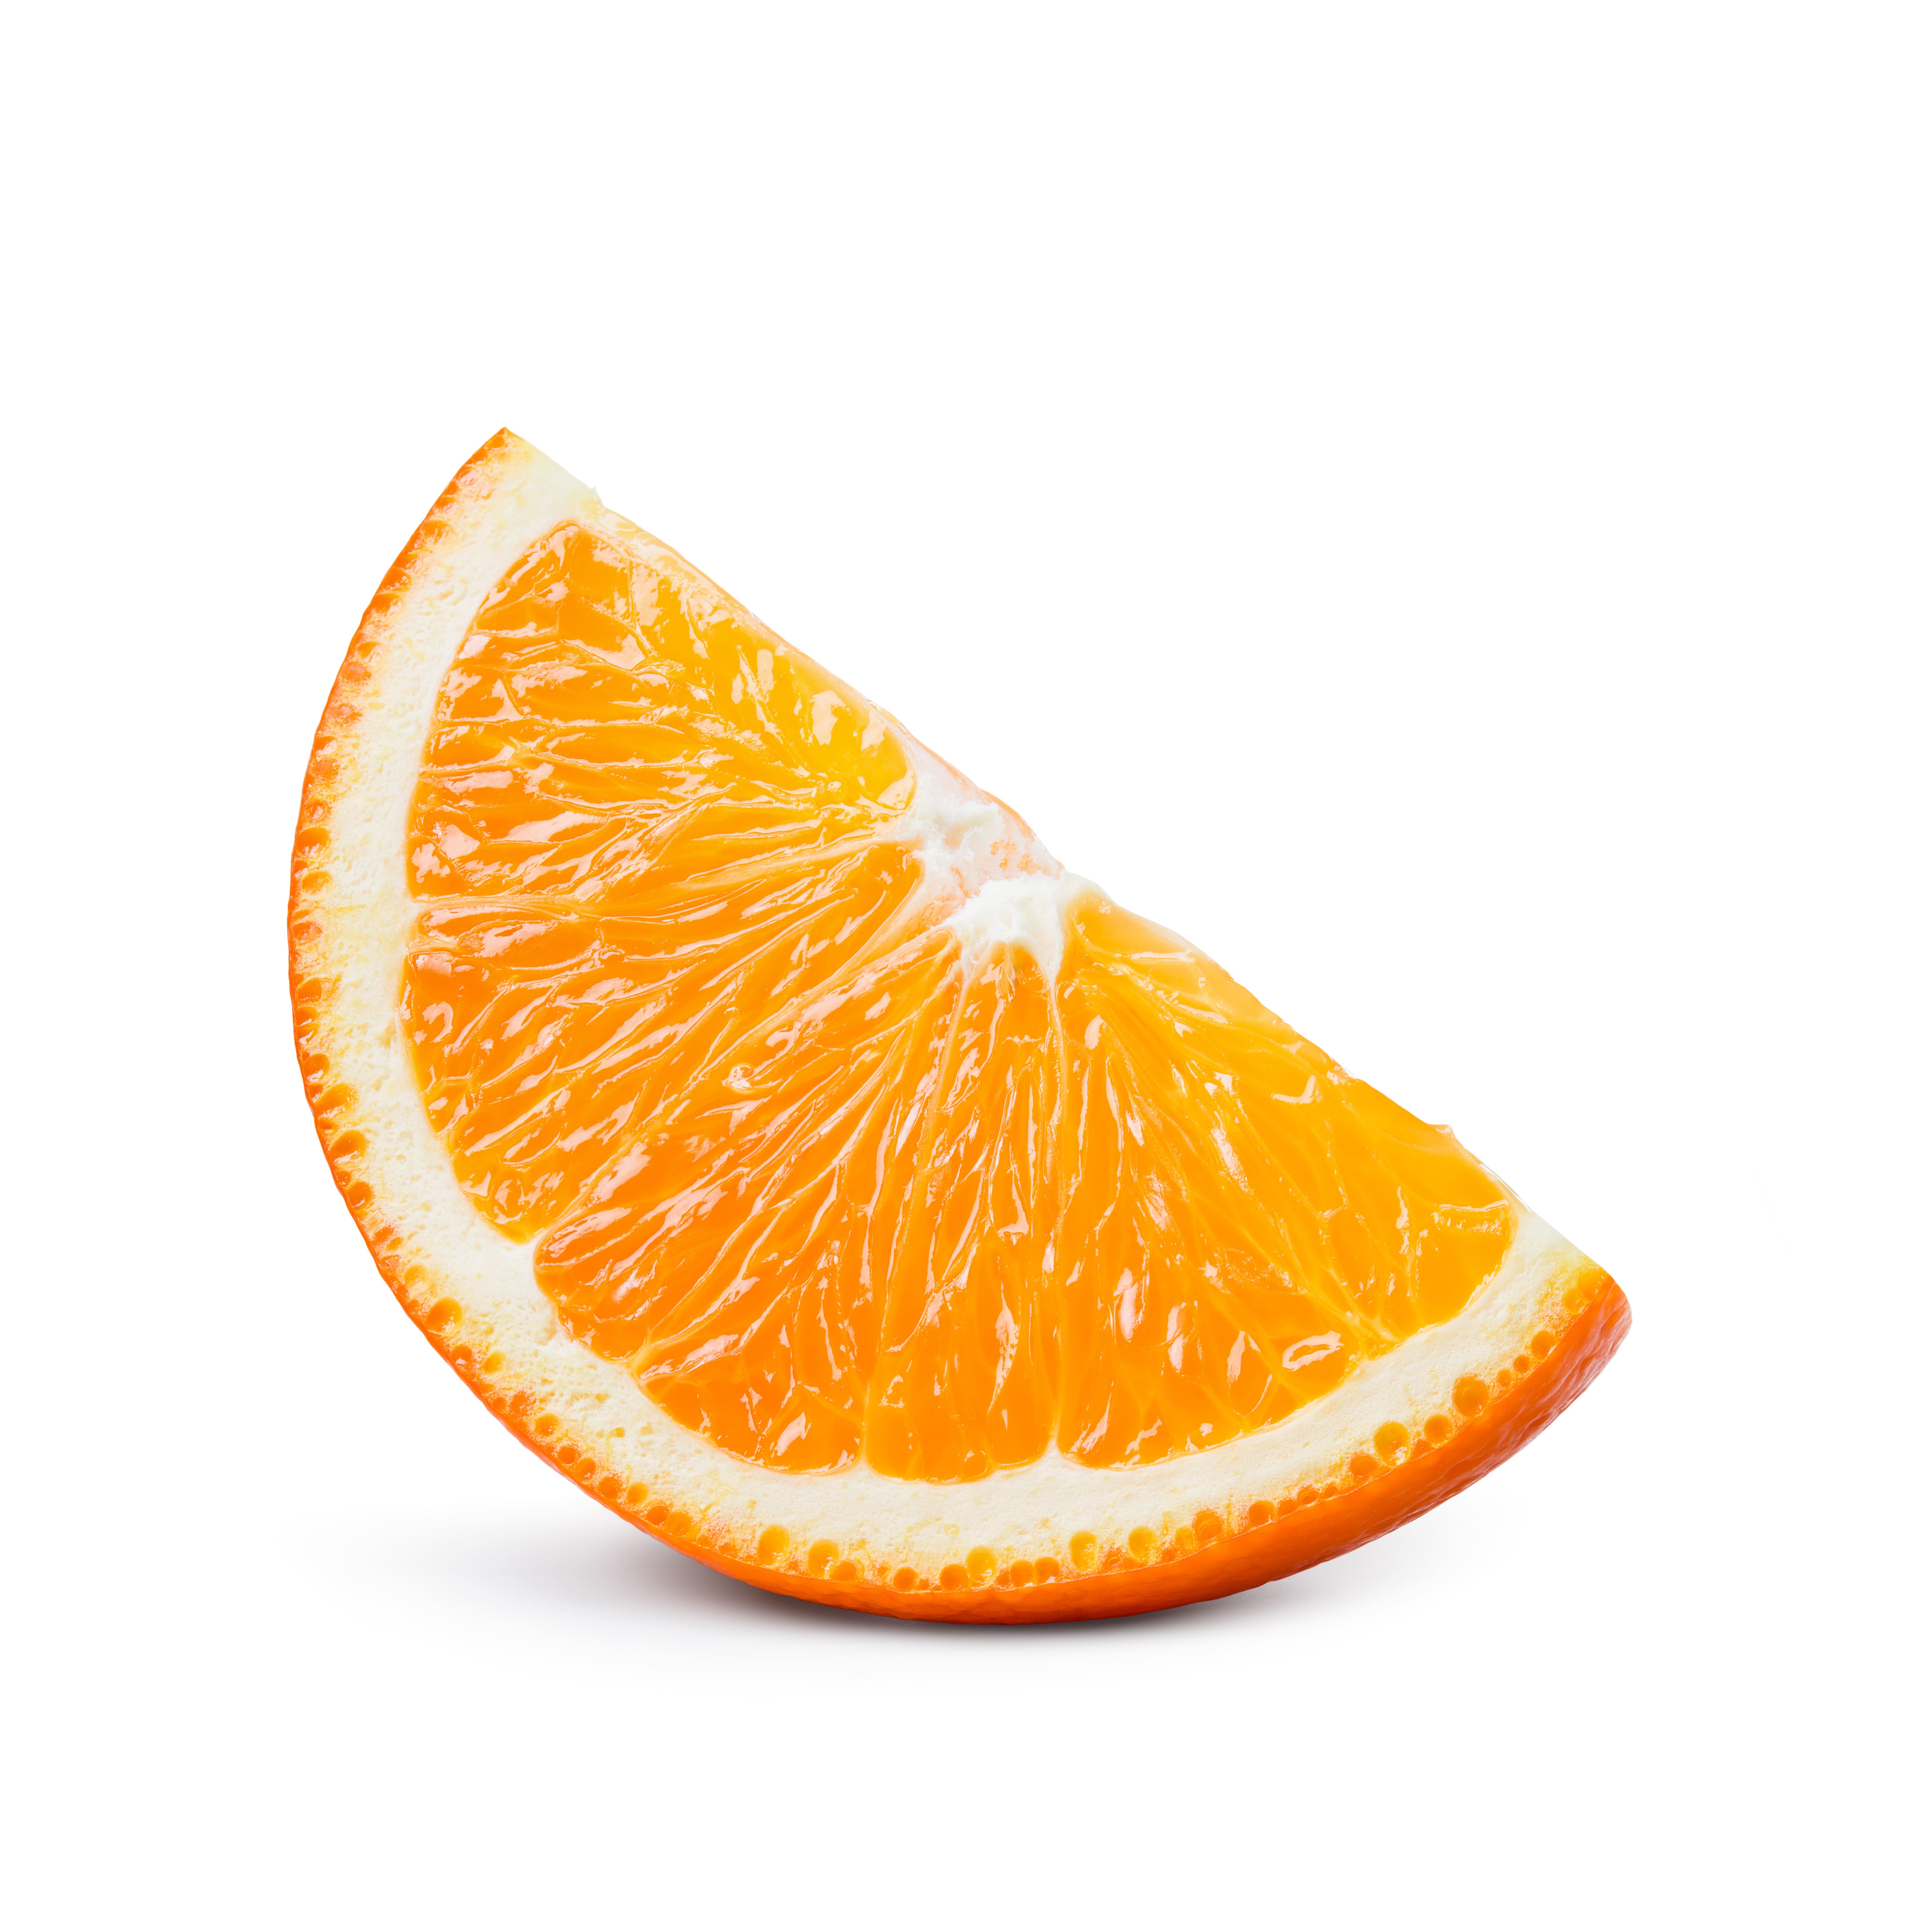 Orangenöl belebt die Sinne